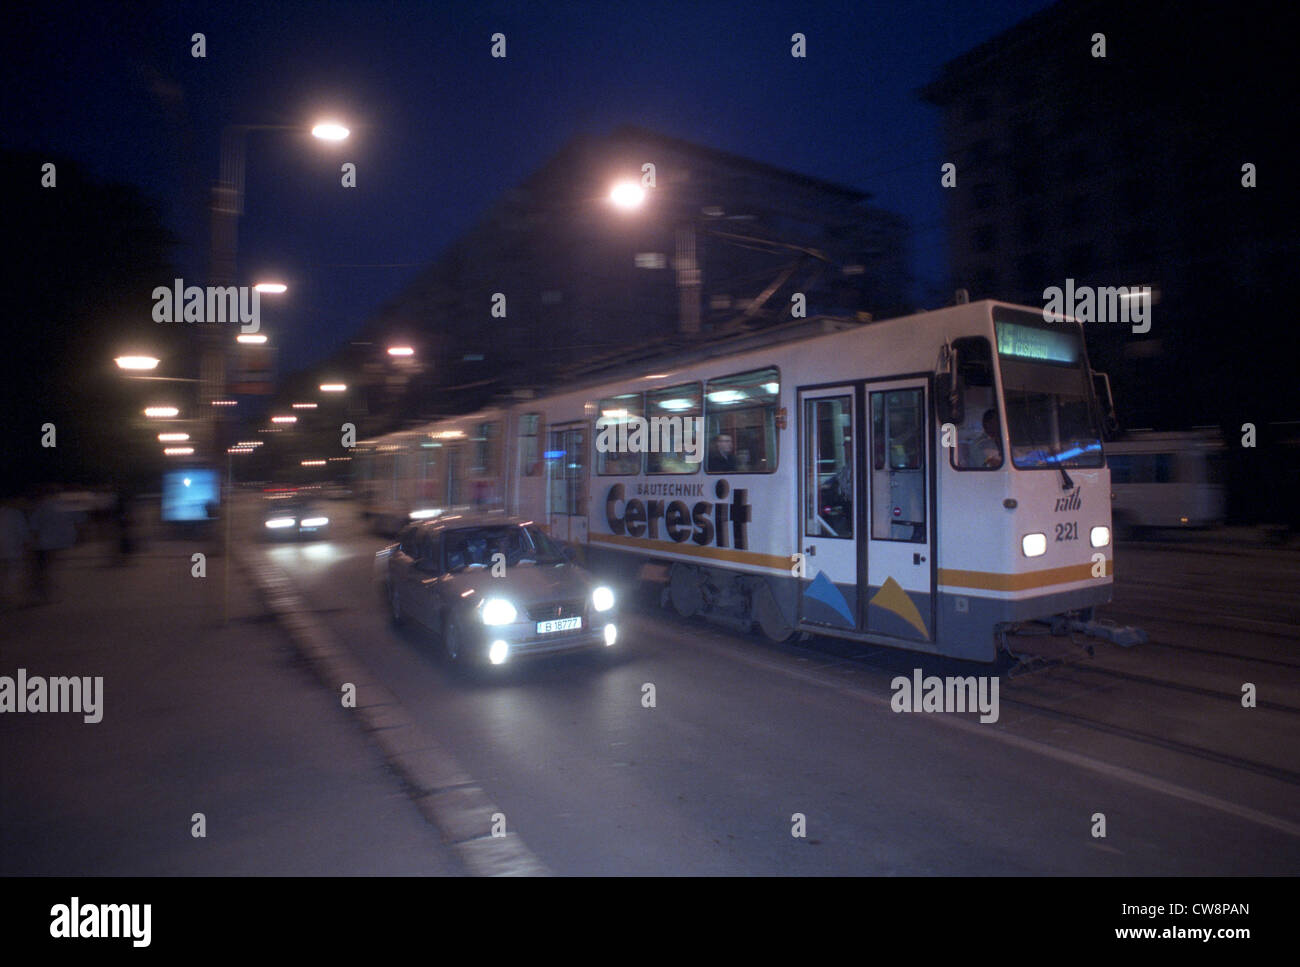 Tramway avec de la publicité Ceresit, Bucarest Banque D'Images